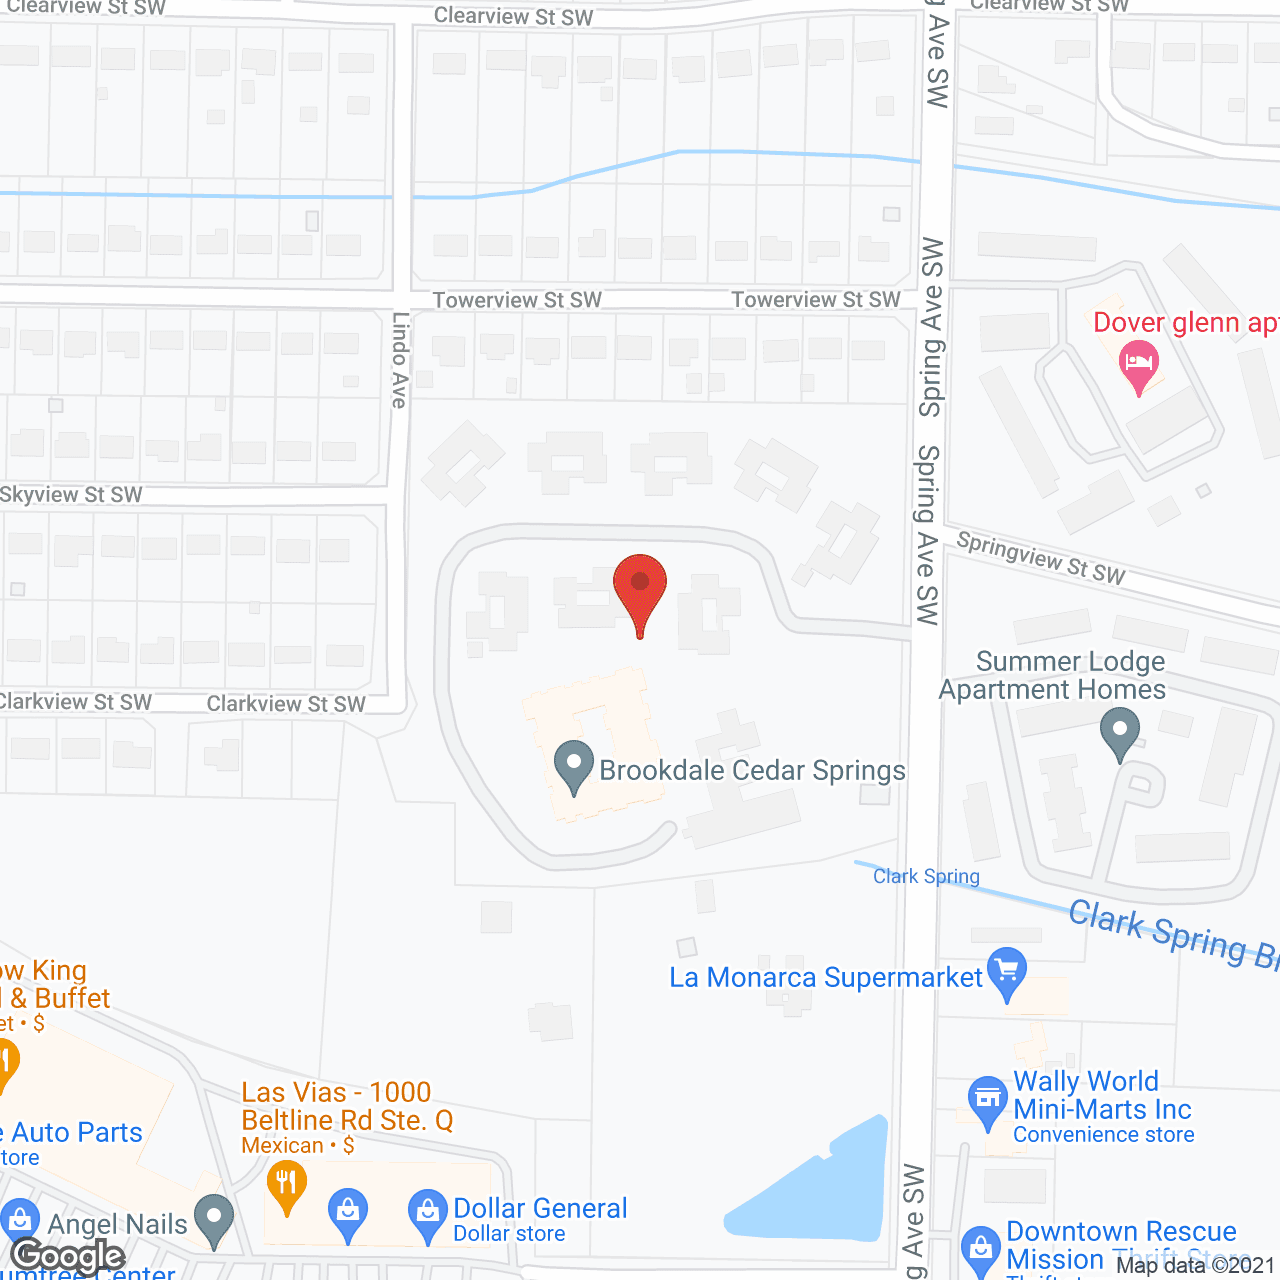 Brookdale Cedar Springs in google map